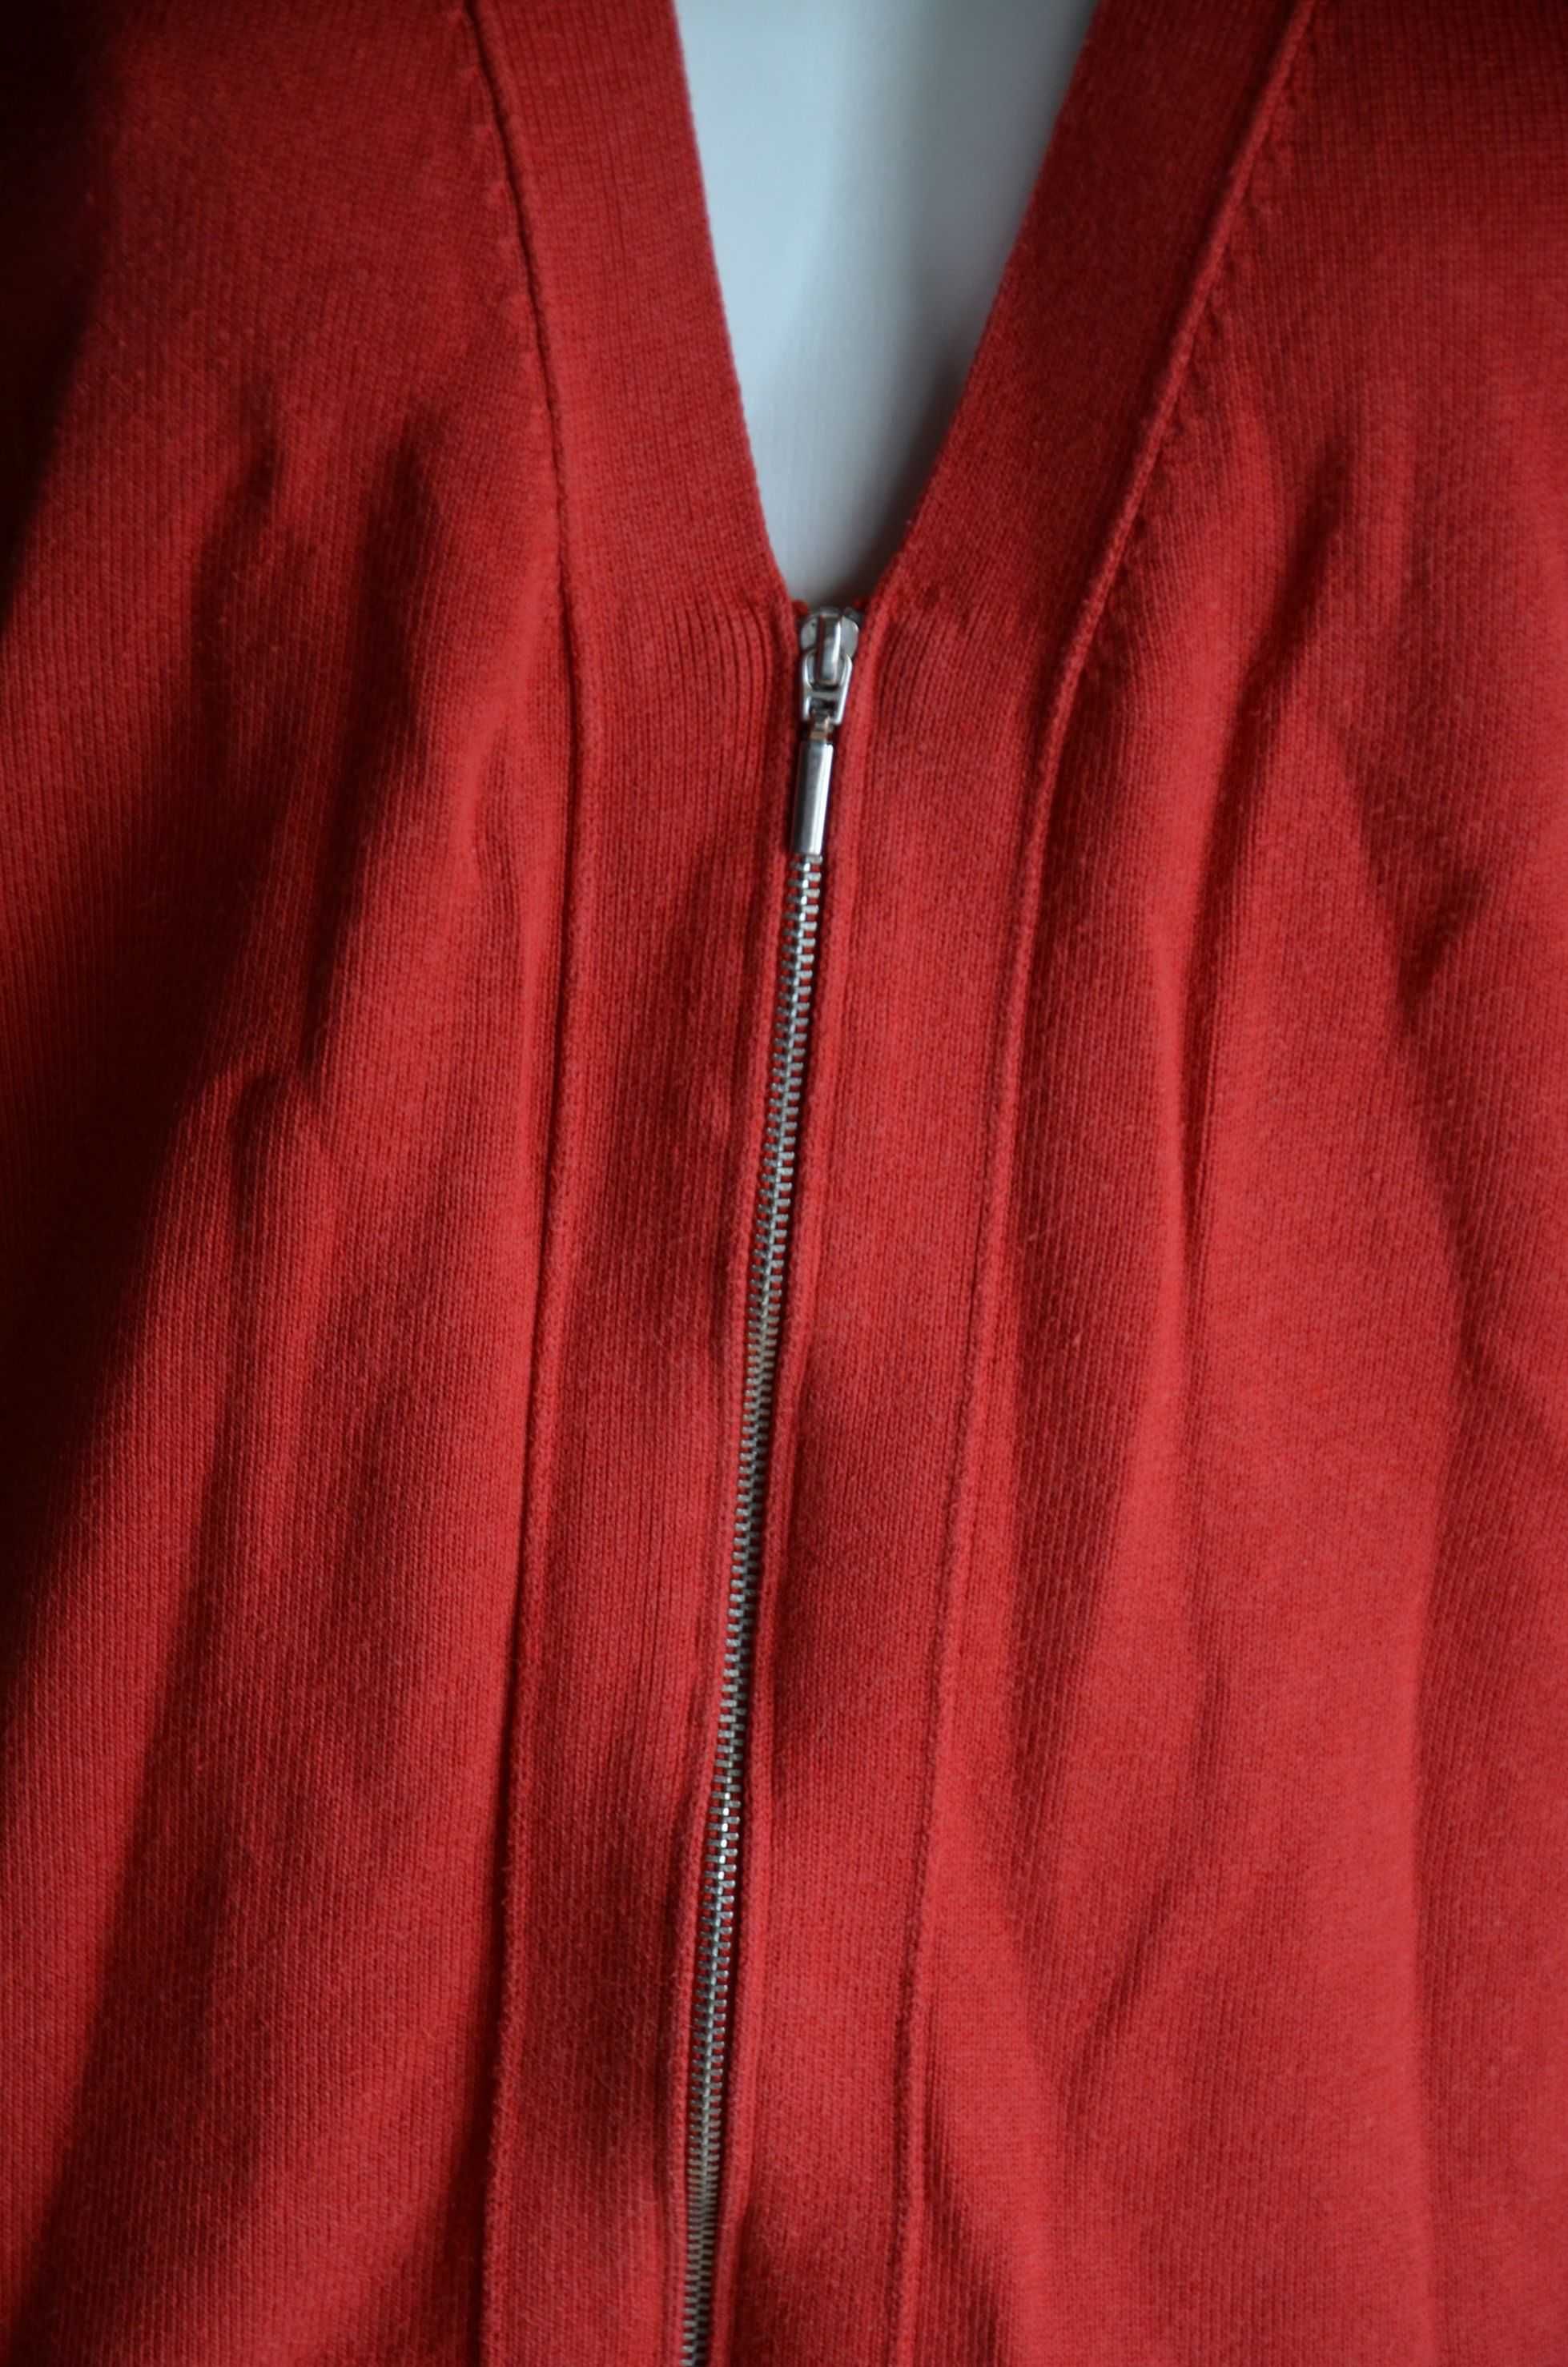 Sweter kardigan czerwony na suwak cienki M L 38 40